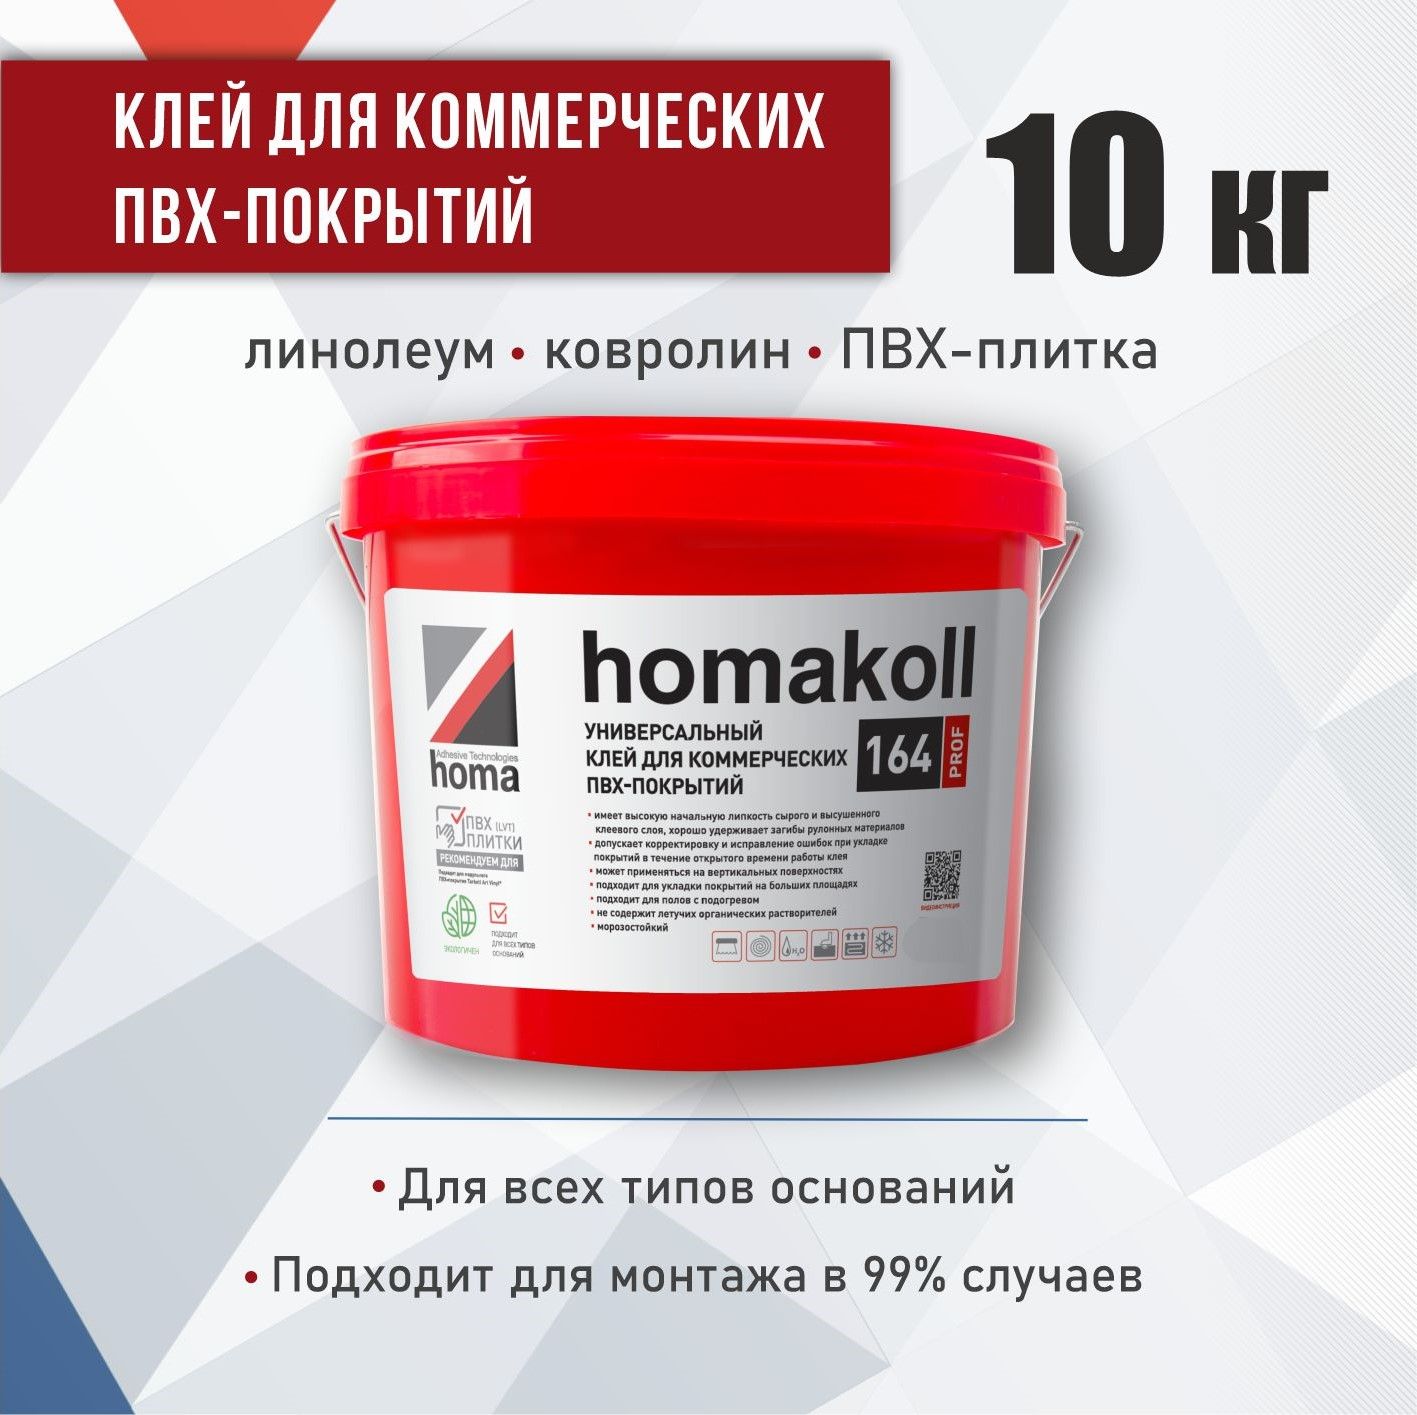 Homakoll 164 Prof –  клей для напольного покрытия на  по .